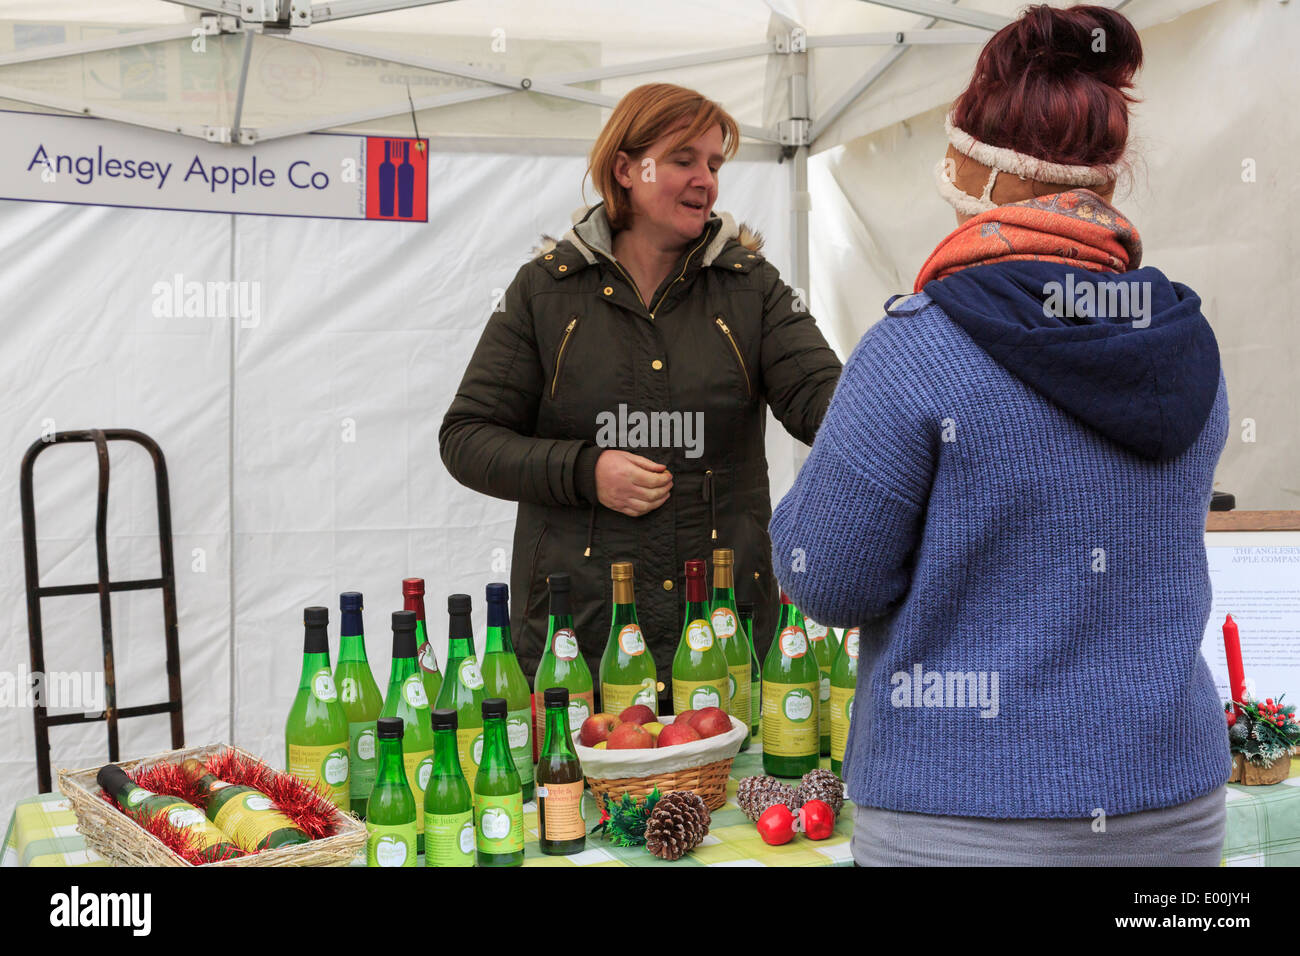 Société de vente d'Apple d'Anglesey de décrochage des boissons aux fruits à Noël Nourriture et foire artisanale à Portmeirion Gwynedd au Pays de Galles Royaume-uni Grande-Bretagne Banque D'Images